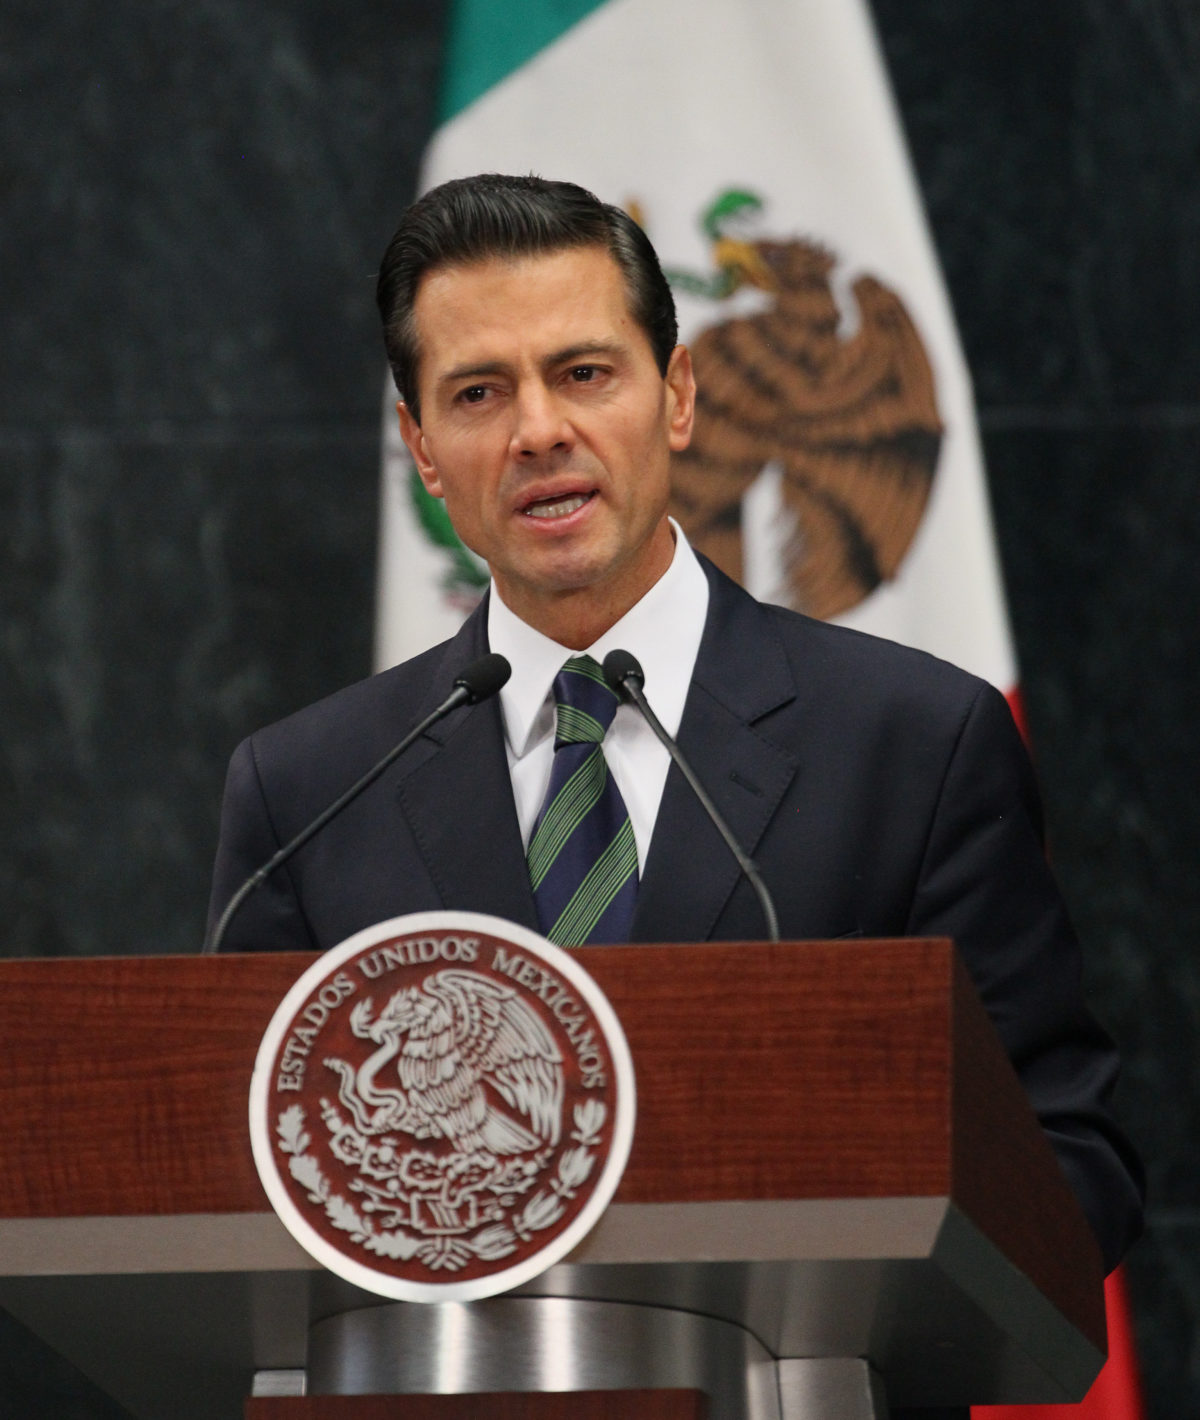 EEUU cree que su relación con México “superará” el impacto negativo de Trump